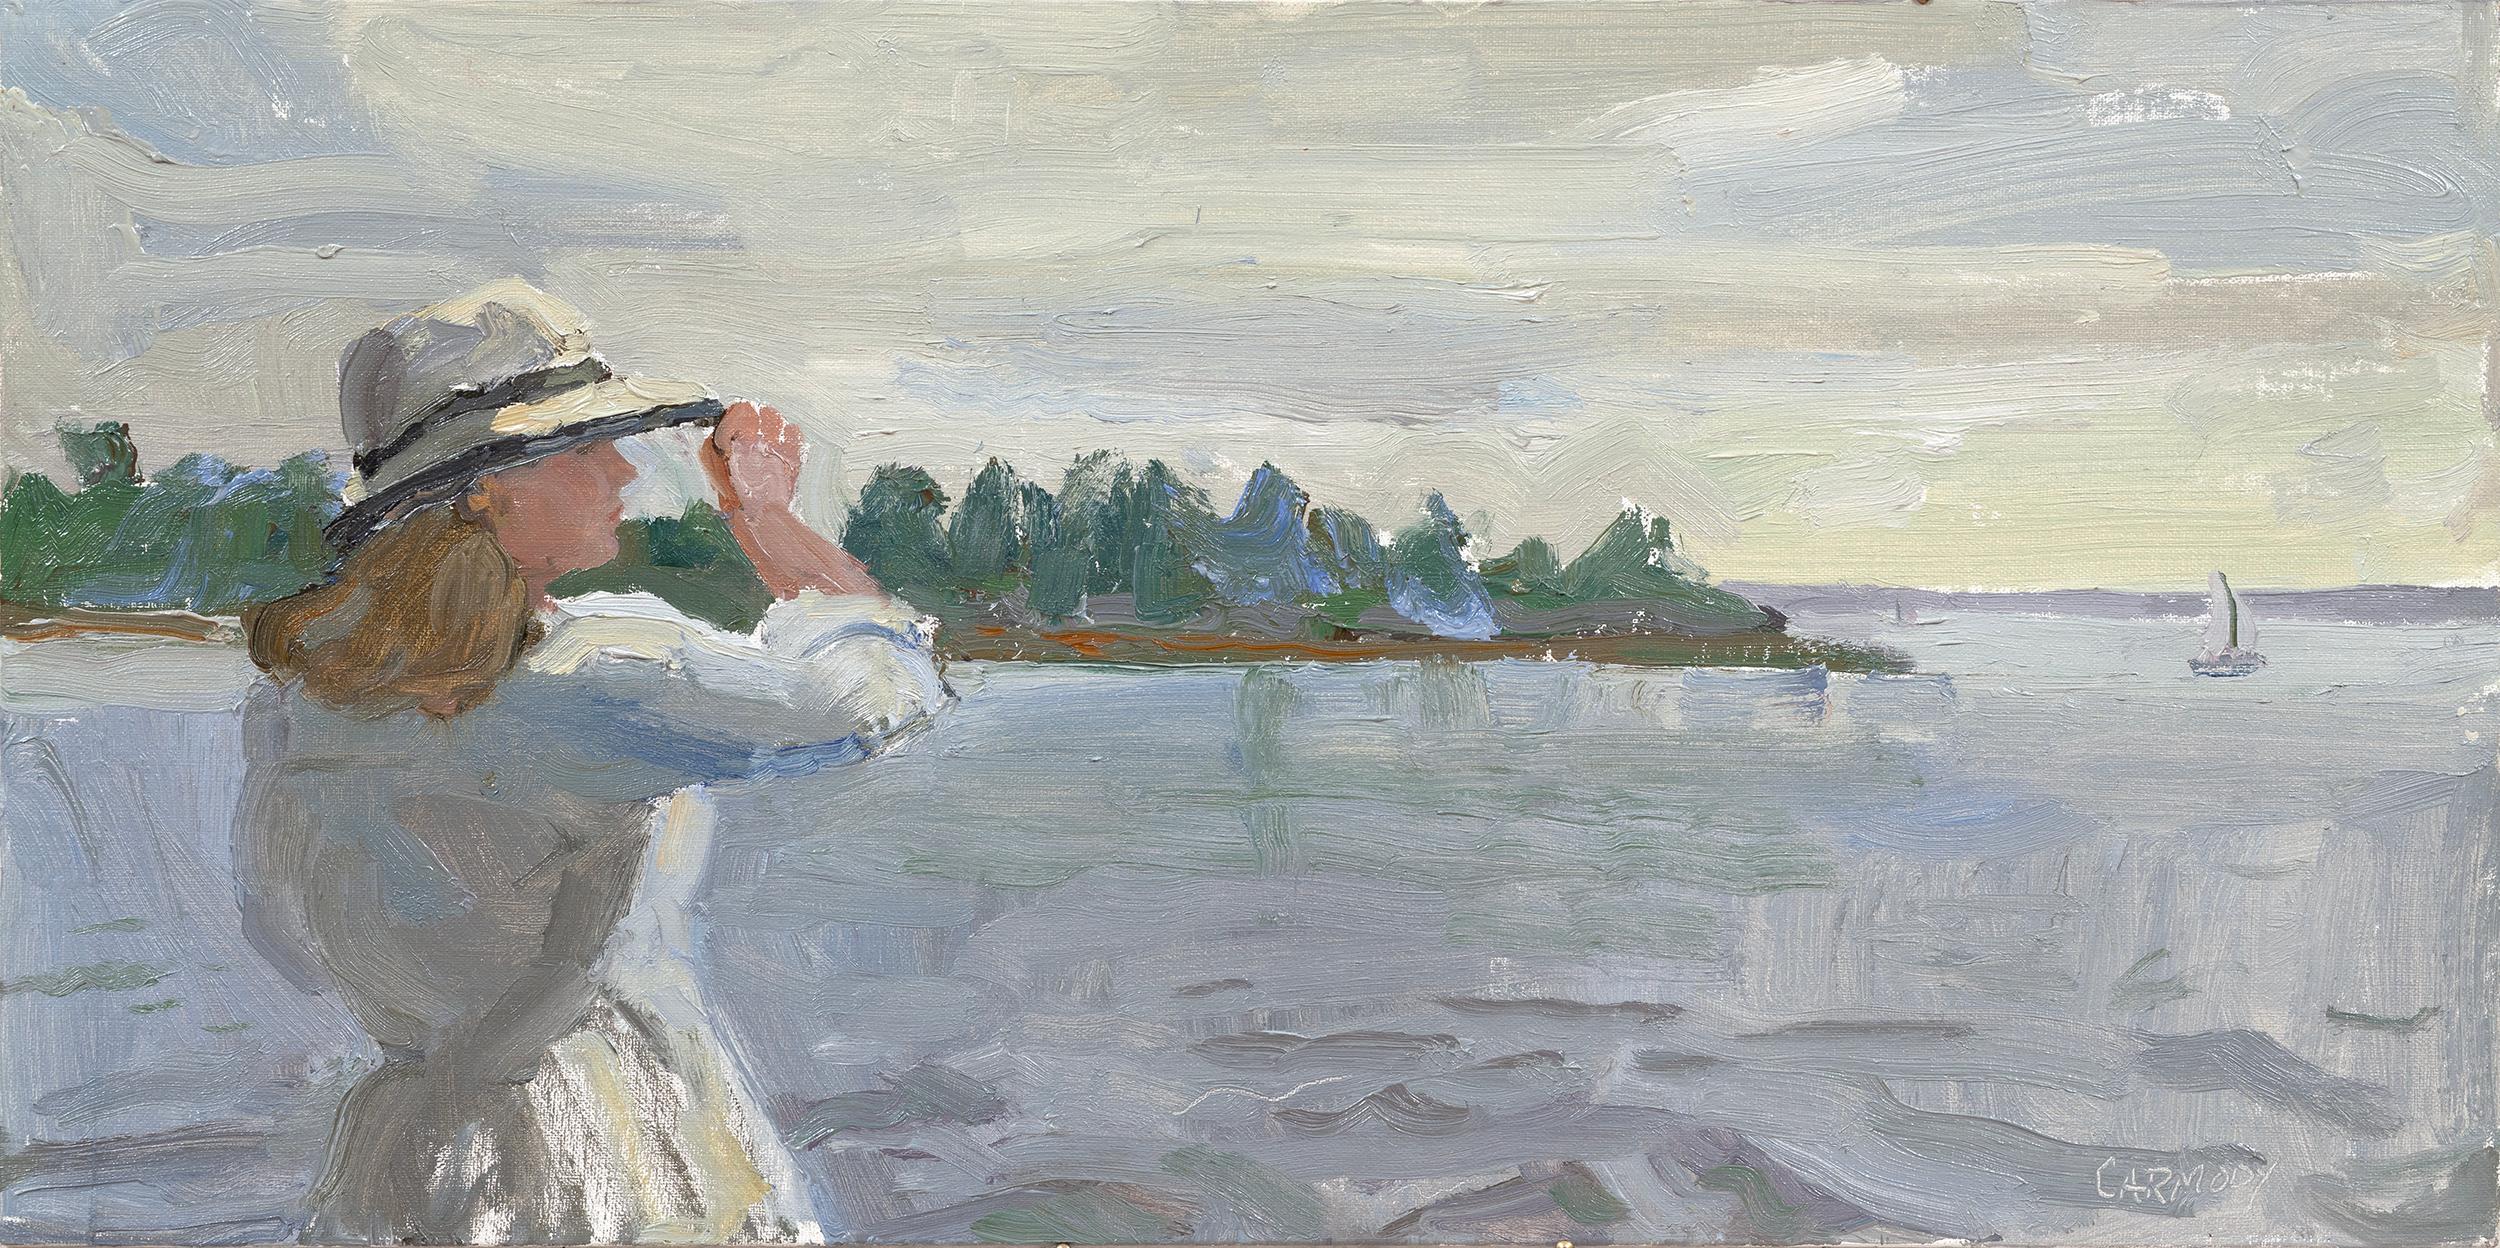 Landscape Painting Kelly Carmody - "Looking Out" paysage marin contemporain avec jeune femme en blanc.